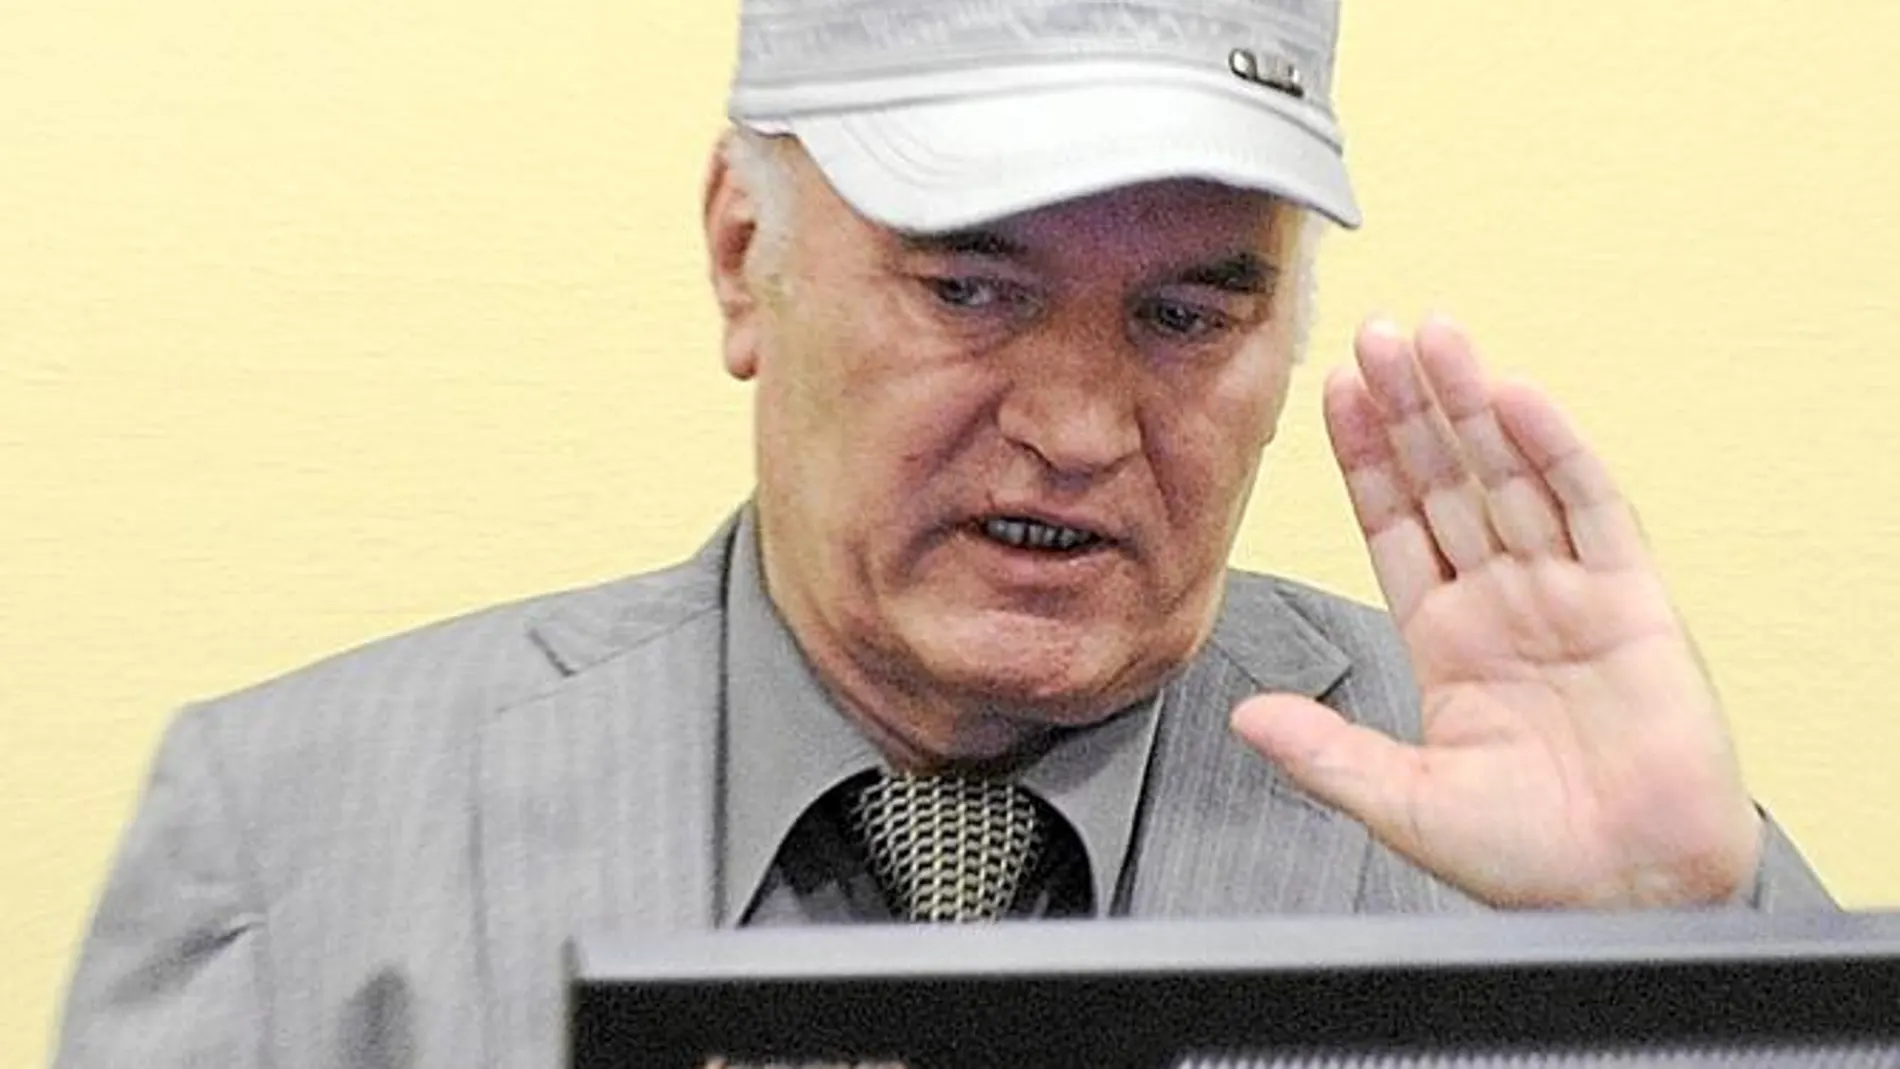 El ex general Mladic se negó ayer a declararse culpable o inocente